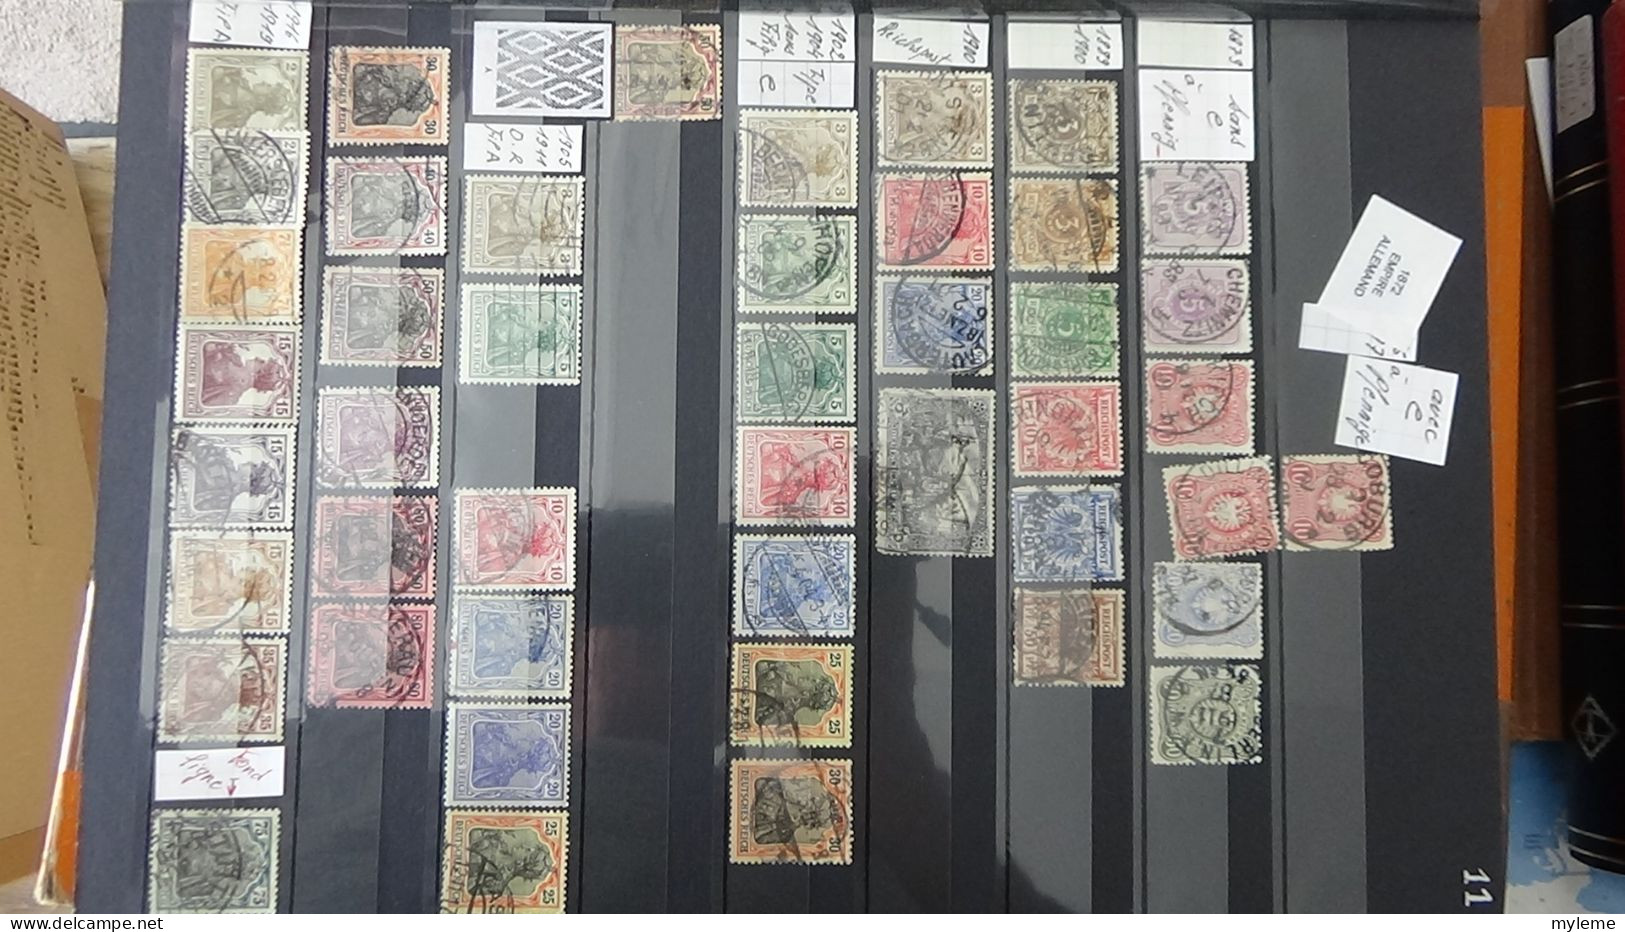 BF31 Ensemble de timbres de divers pays + Orphelin N° 152 ** (2 pites de rouille au dos)  Cote 550 euros